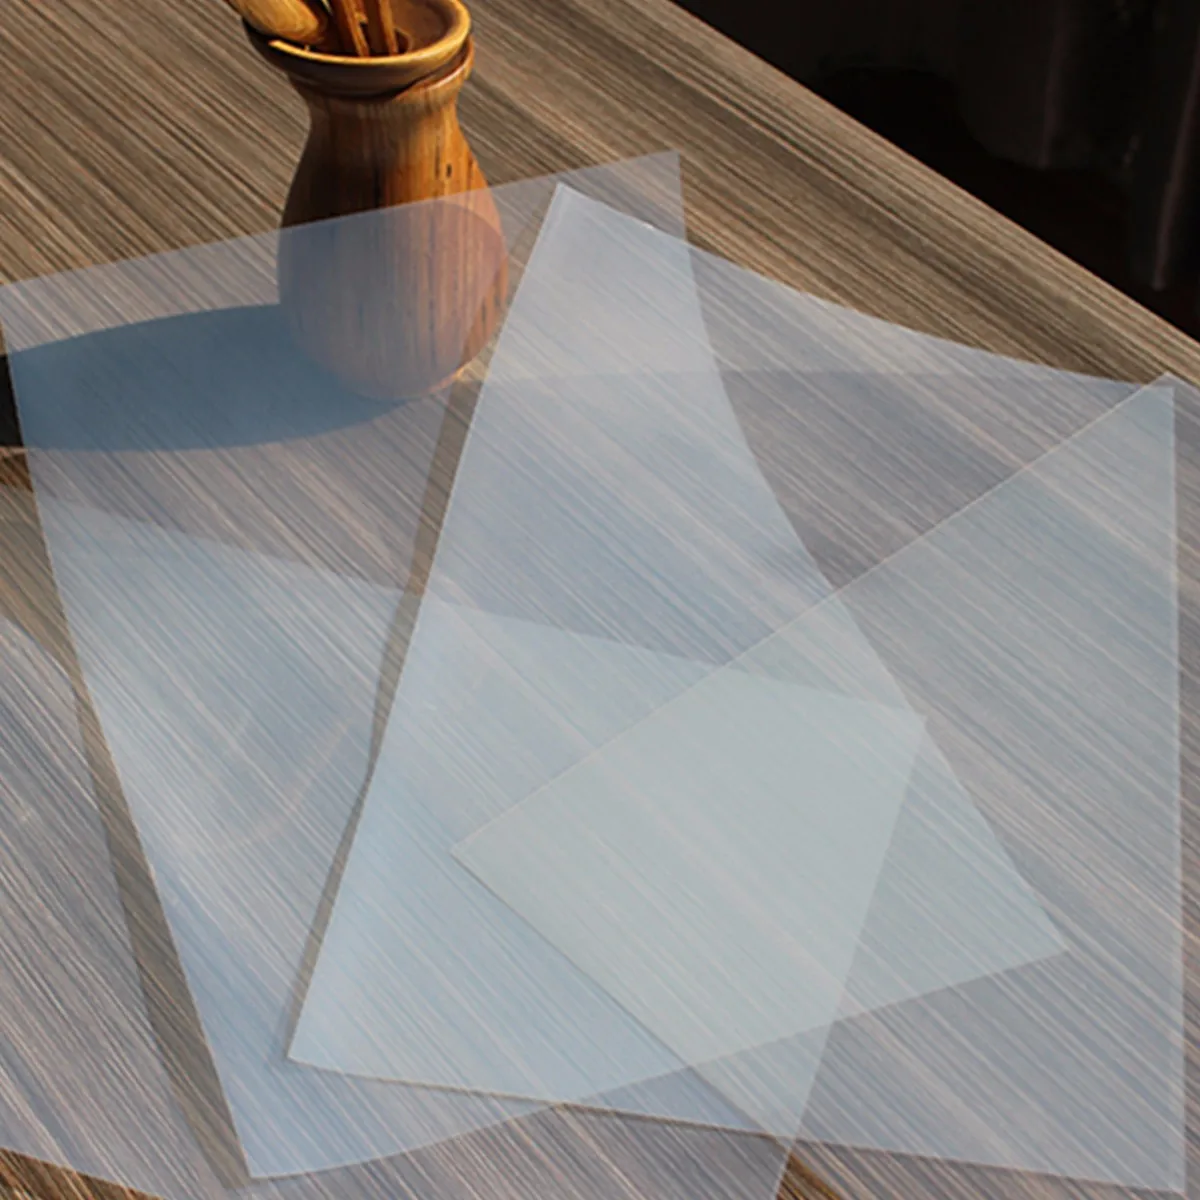 20 Лист Экран печати прозрачность струйных самоклейка на окна PCB шаблон для печати дизайн струйных пленка сохраняет чернил Толщина 0,12 мм